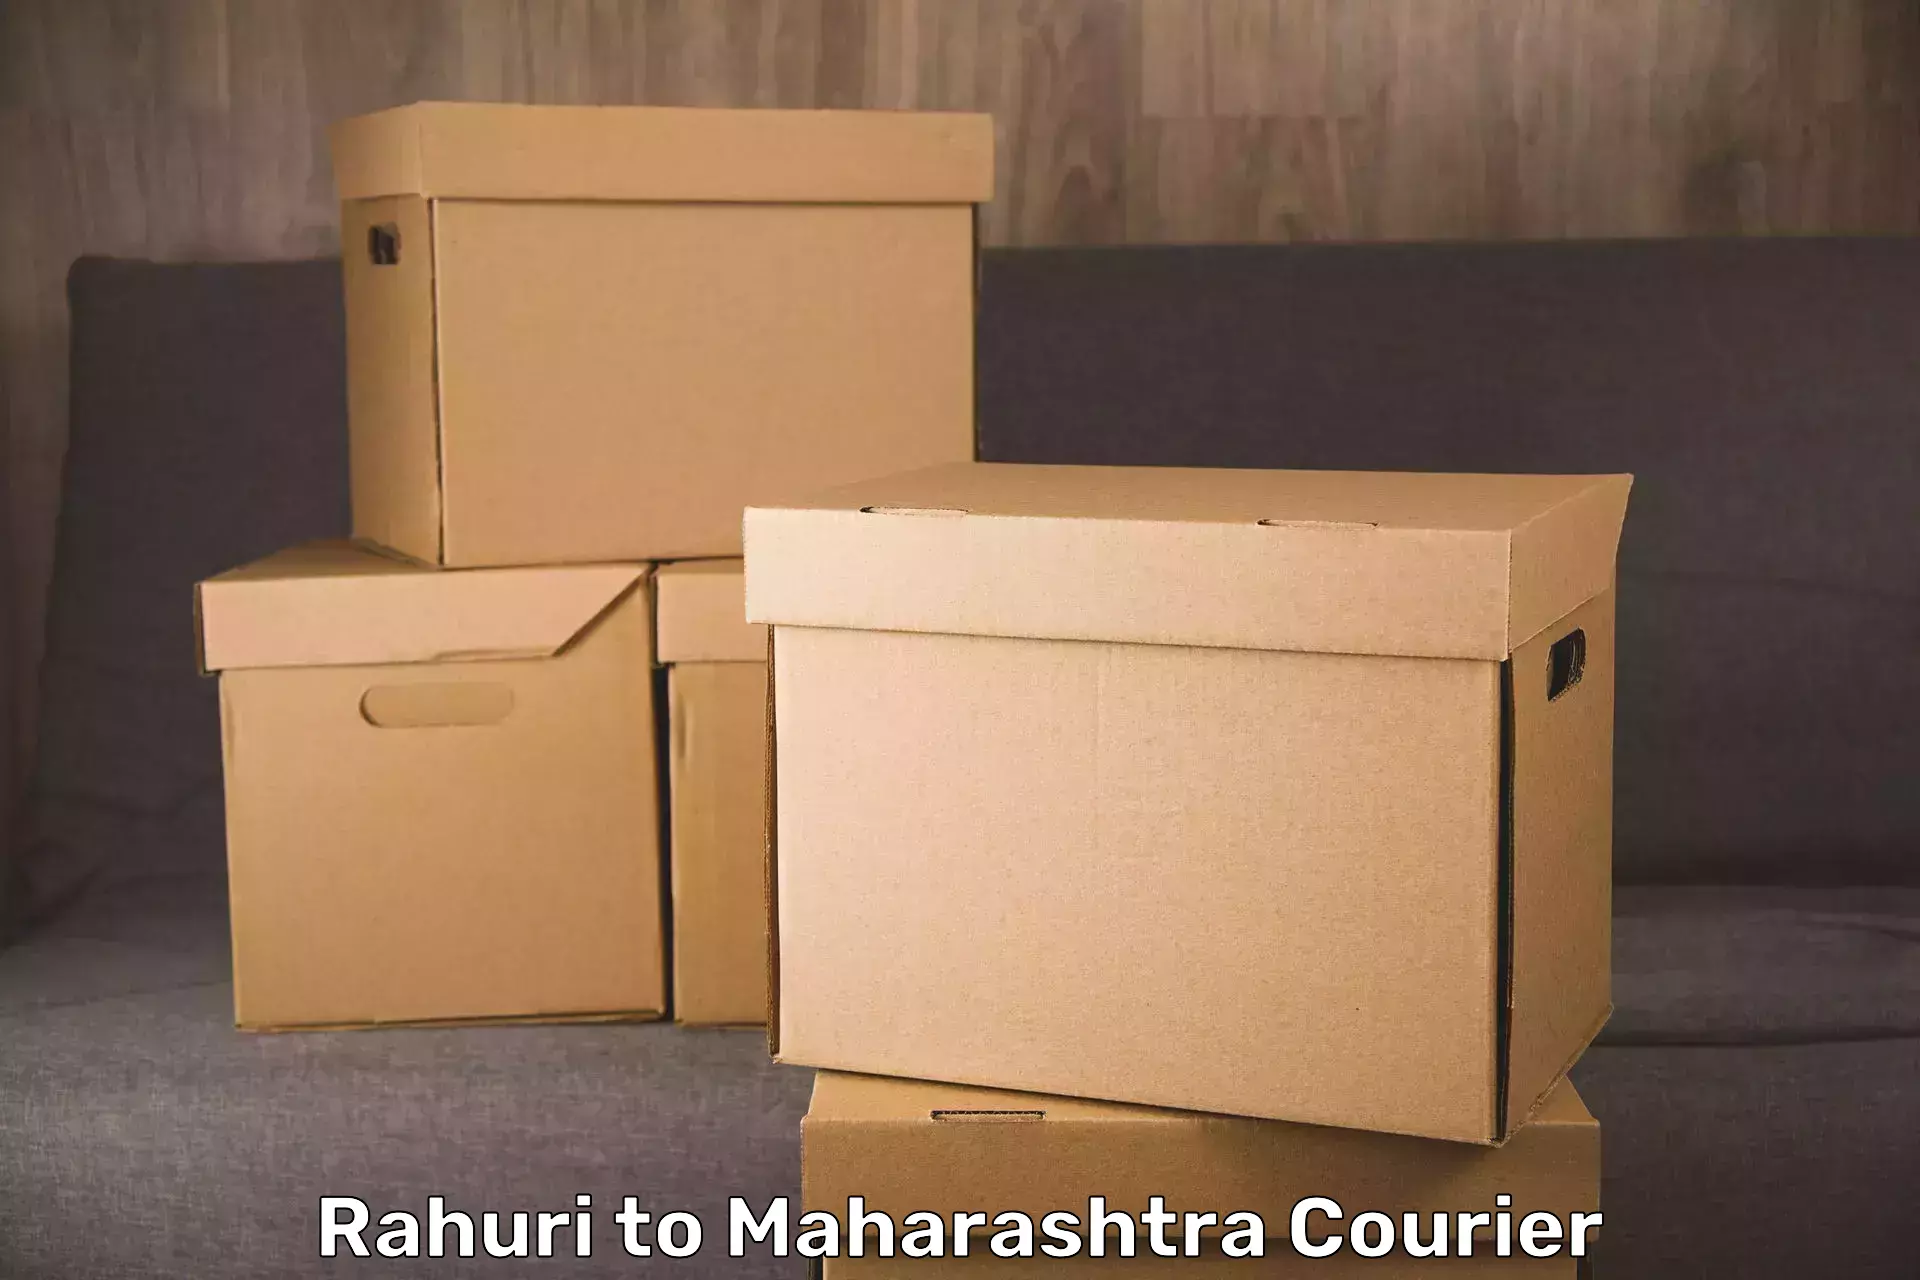 Luggage transport consultancy Rahuri to Nandura